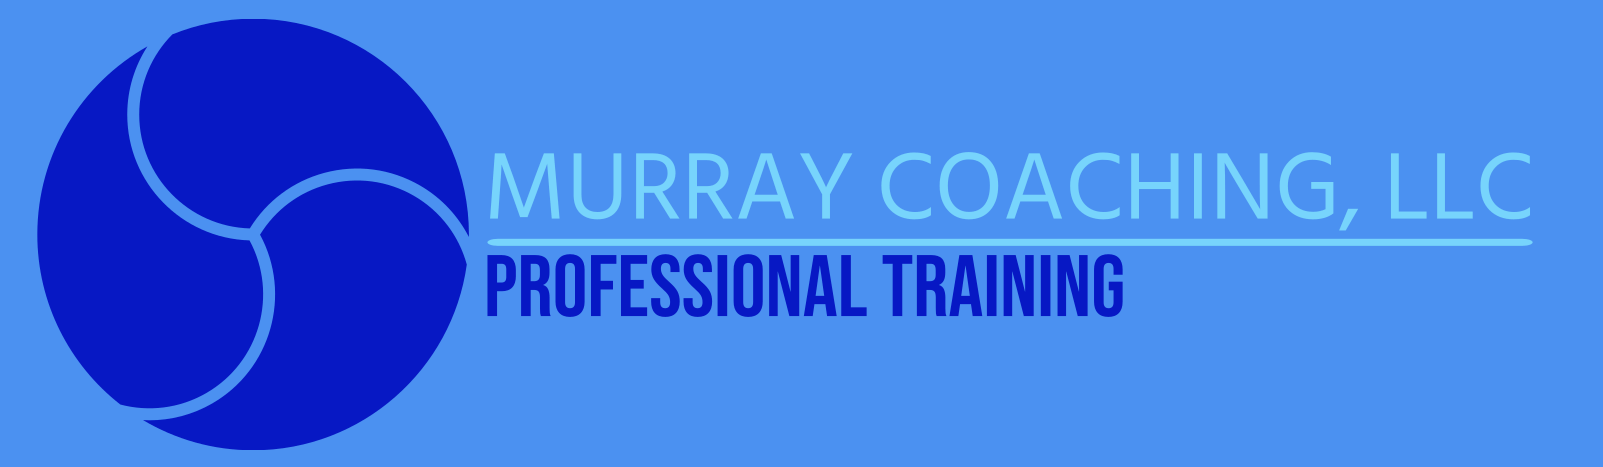 Murray Coaching LLC